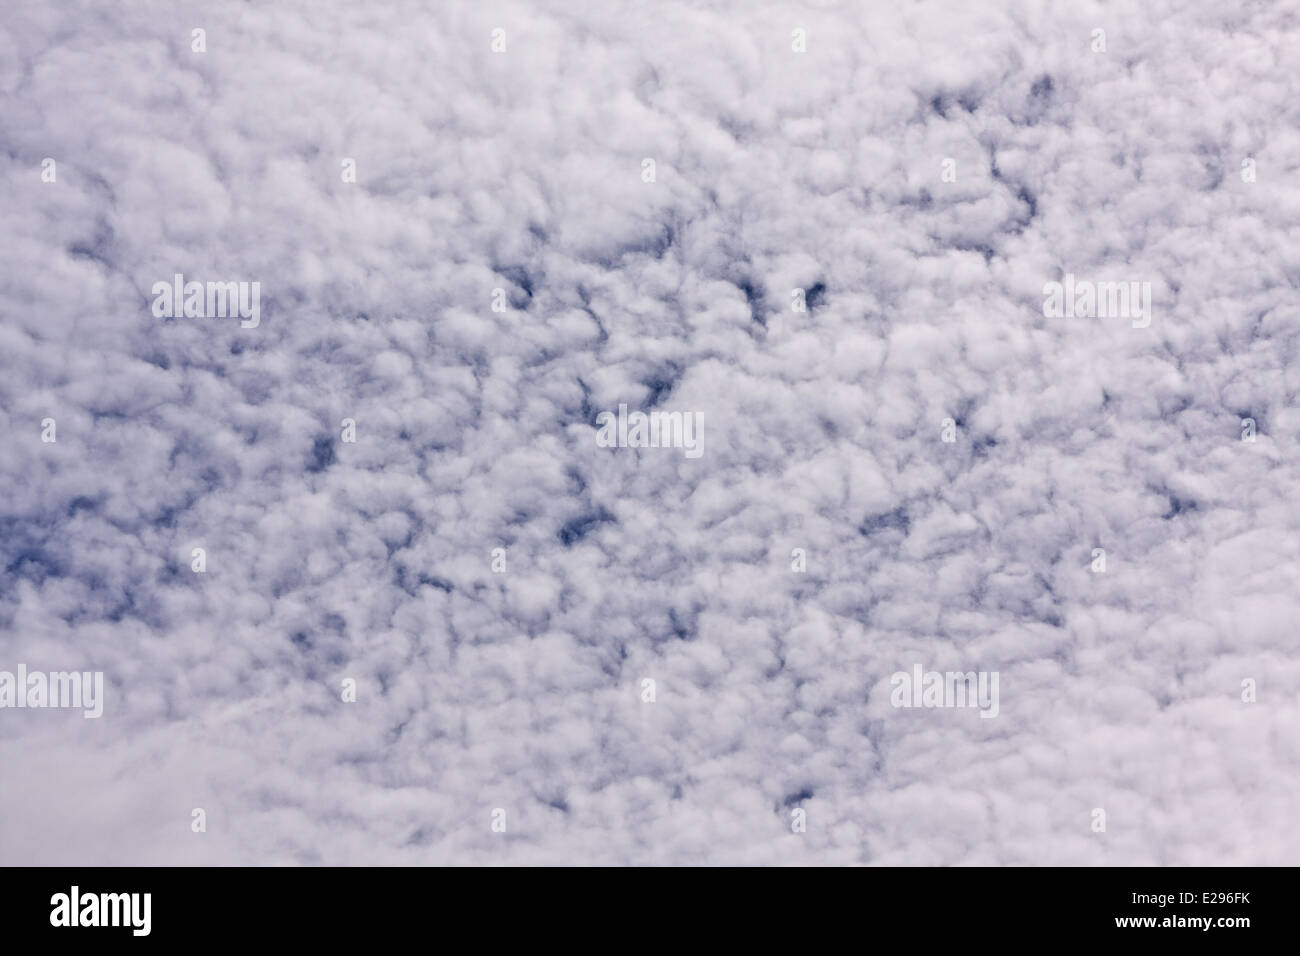 Tiefflug cumuliformen und Stratocumuli Form Wolken bezeichnet umgangssprachlich als "Fischgrat" oder "Makrele" in Dundee, Großbritannien Stockfoto